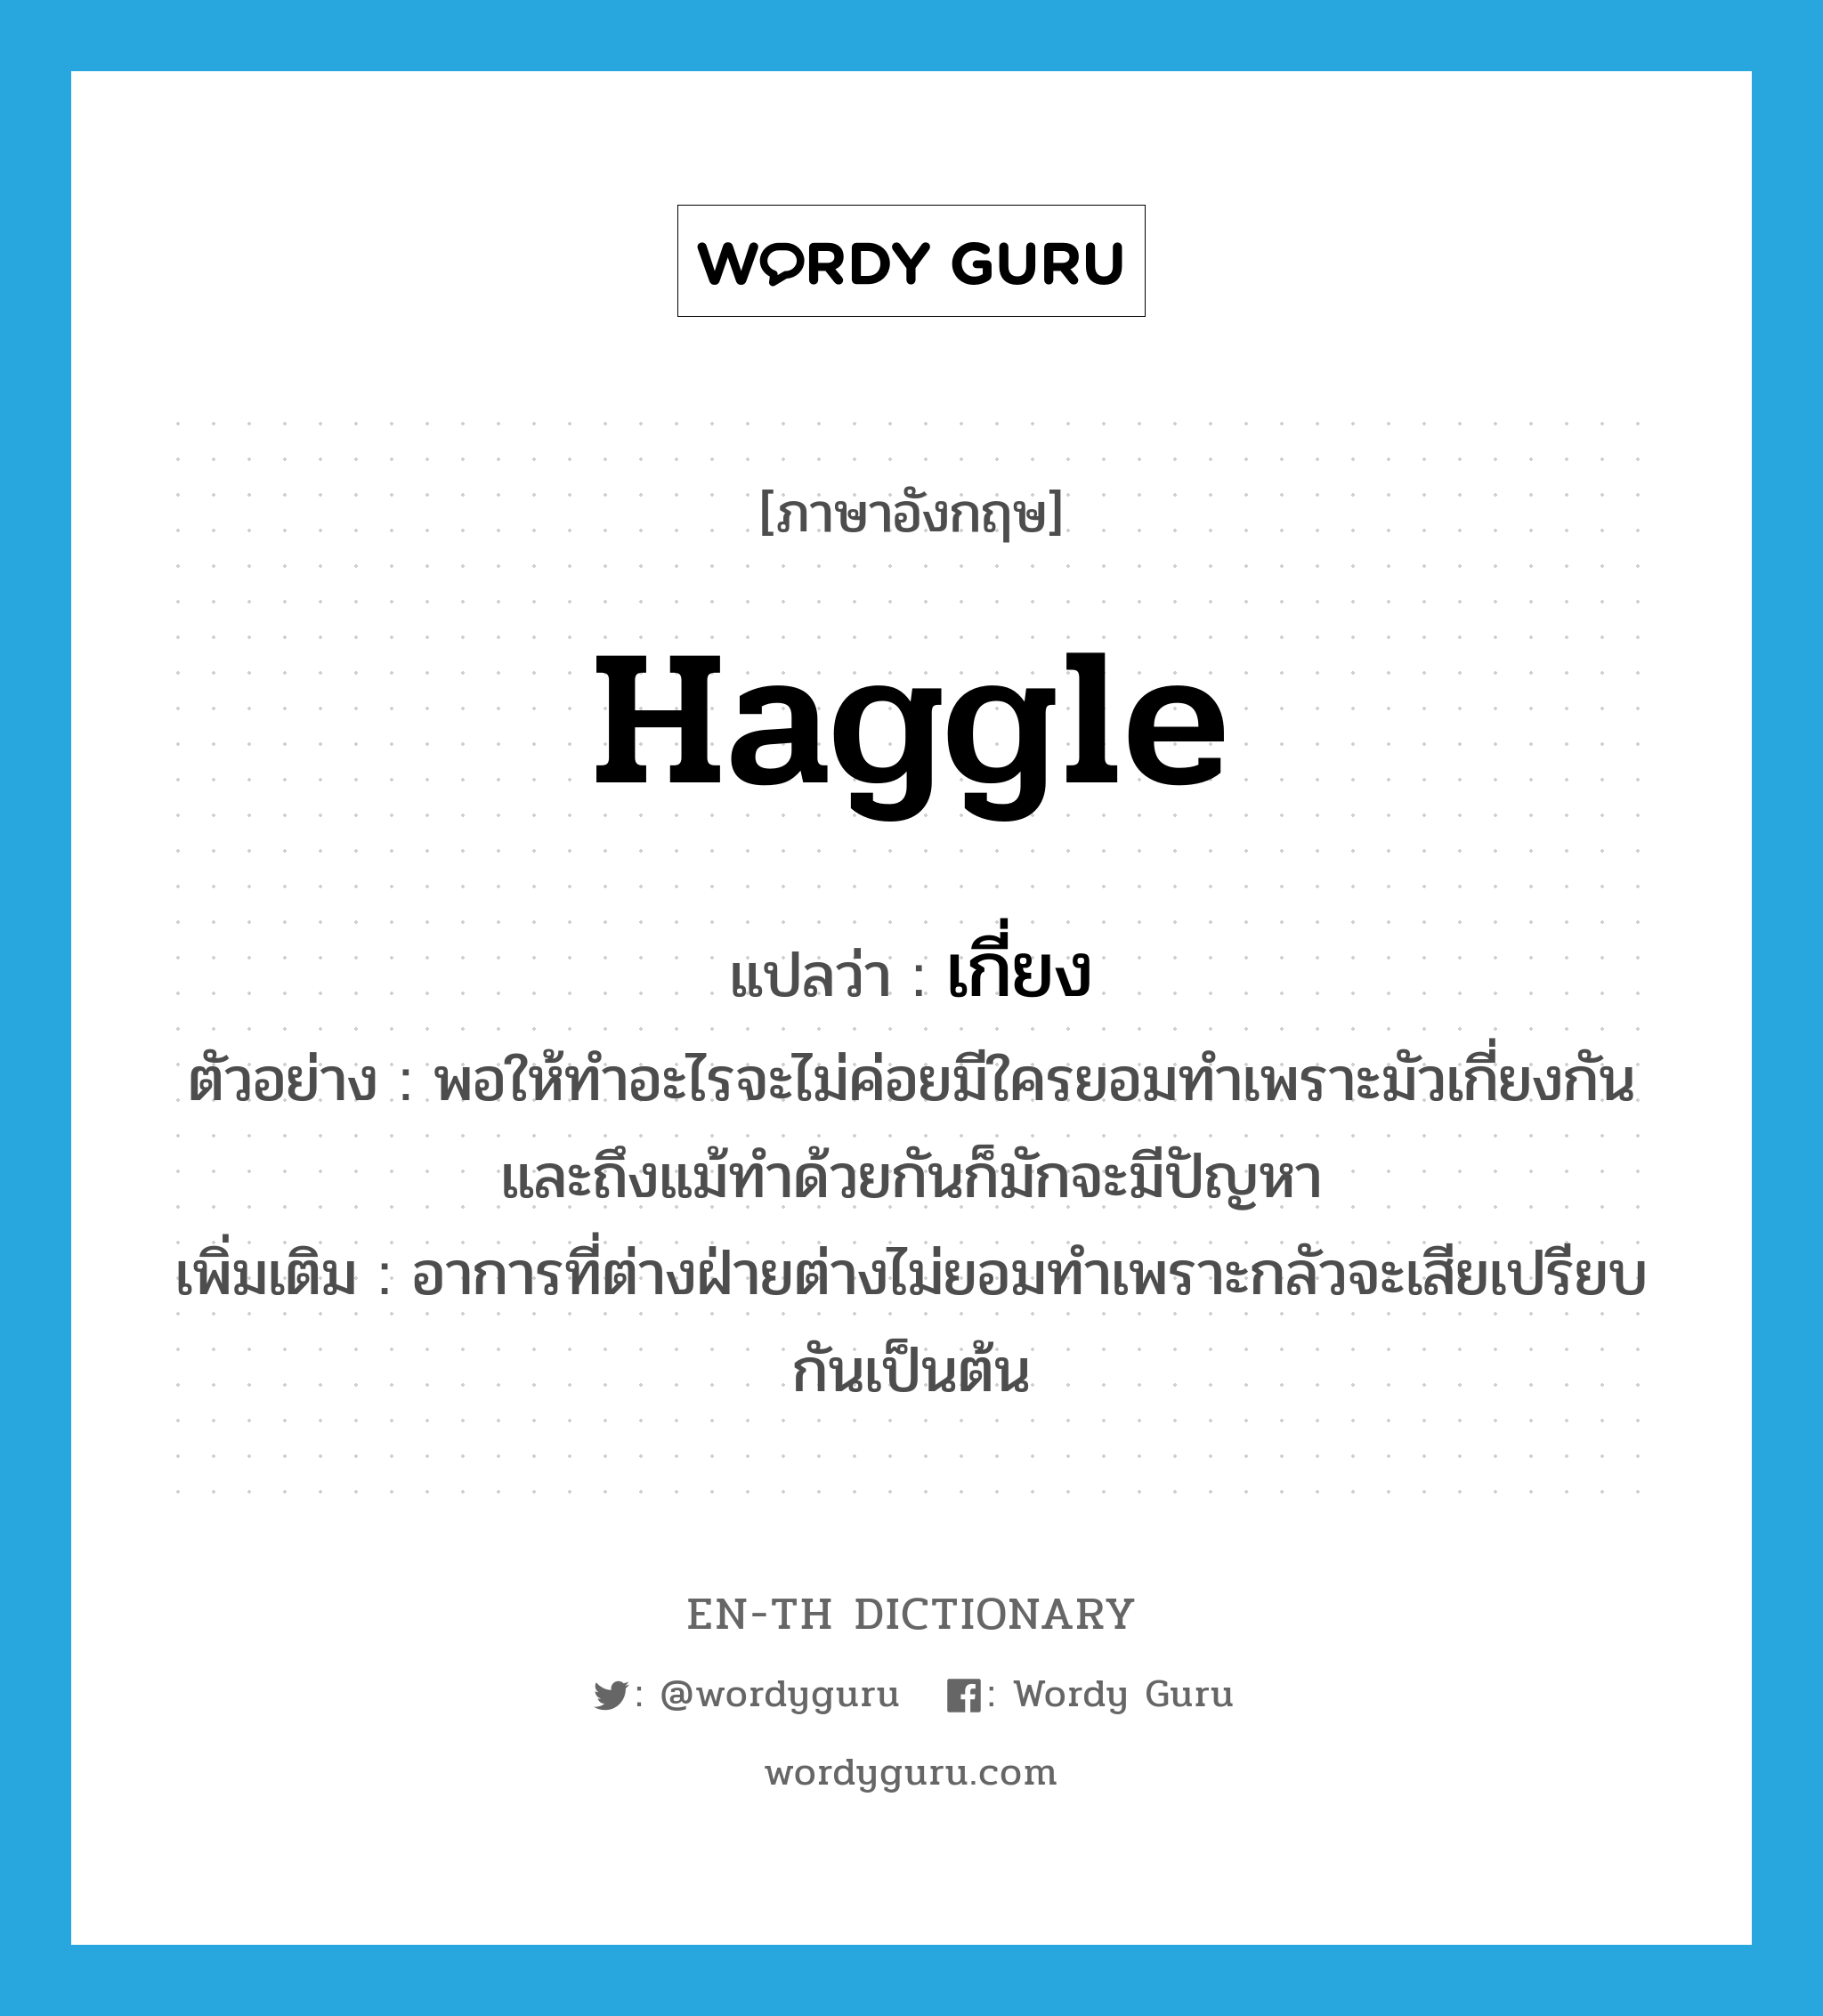 haggle แปลว่า?, คำศัพท์ภาษาอังกฤษ haggle แปลว่า เกี่ยง ประเภท V ตัวอย่าง พอให้ทำอะไรจะไม่ค่อยมีใครยอมทำเพราะมัวเกี่ยงกันและถึงแม้ทำด้วยกันก็มักจะมีปัญหา เพิ่มเติม อาการที่ต่างฝ่ายต่างไม่ยอมทำเพราะกลัวจะเสียเปรียบกันเป็นต้น หมวด V